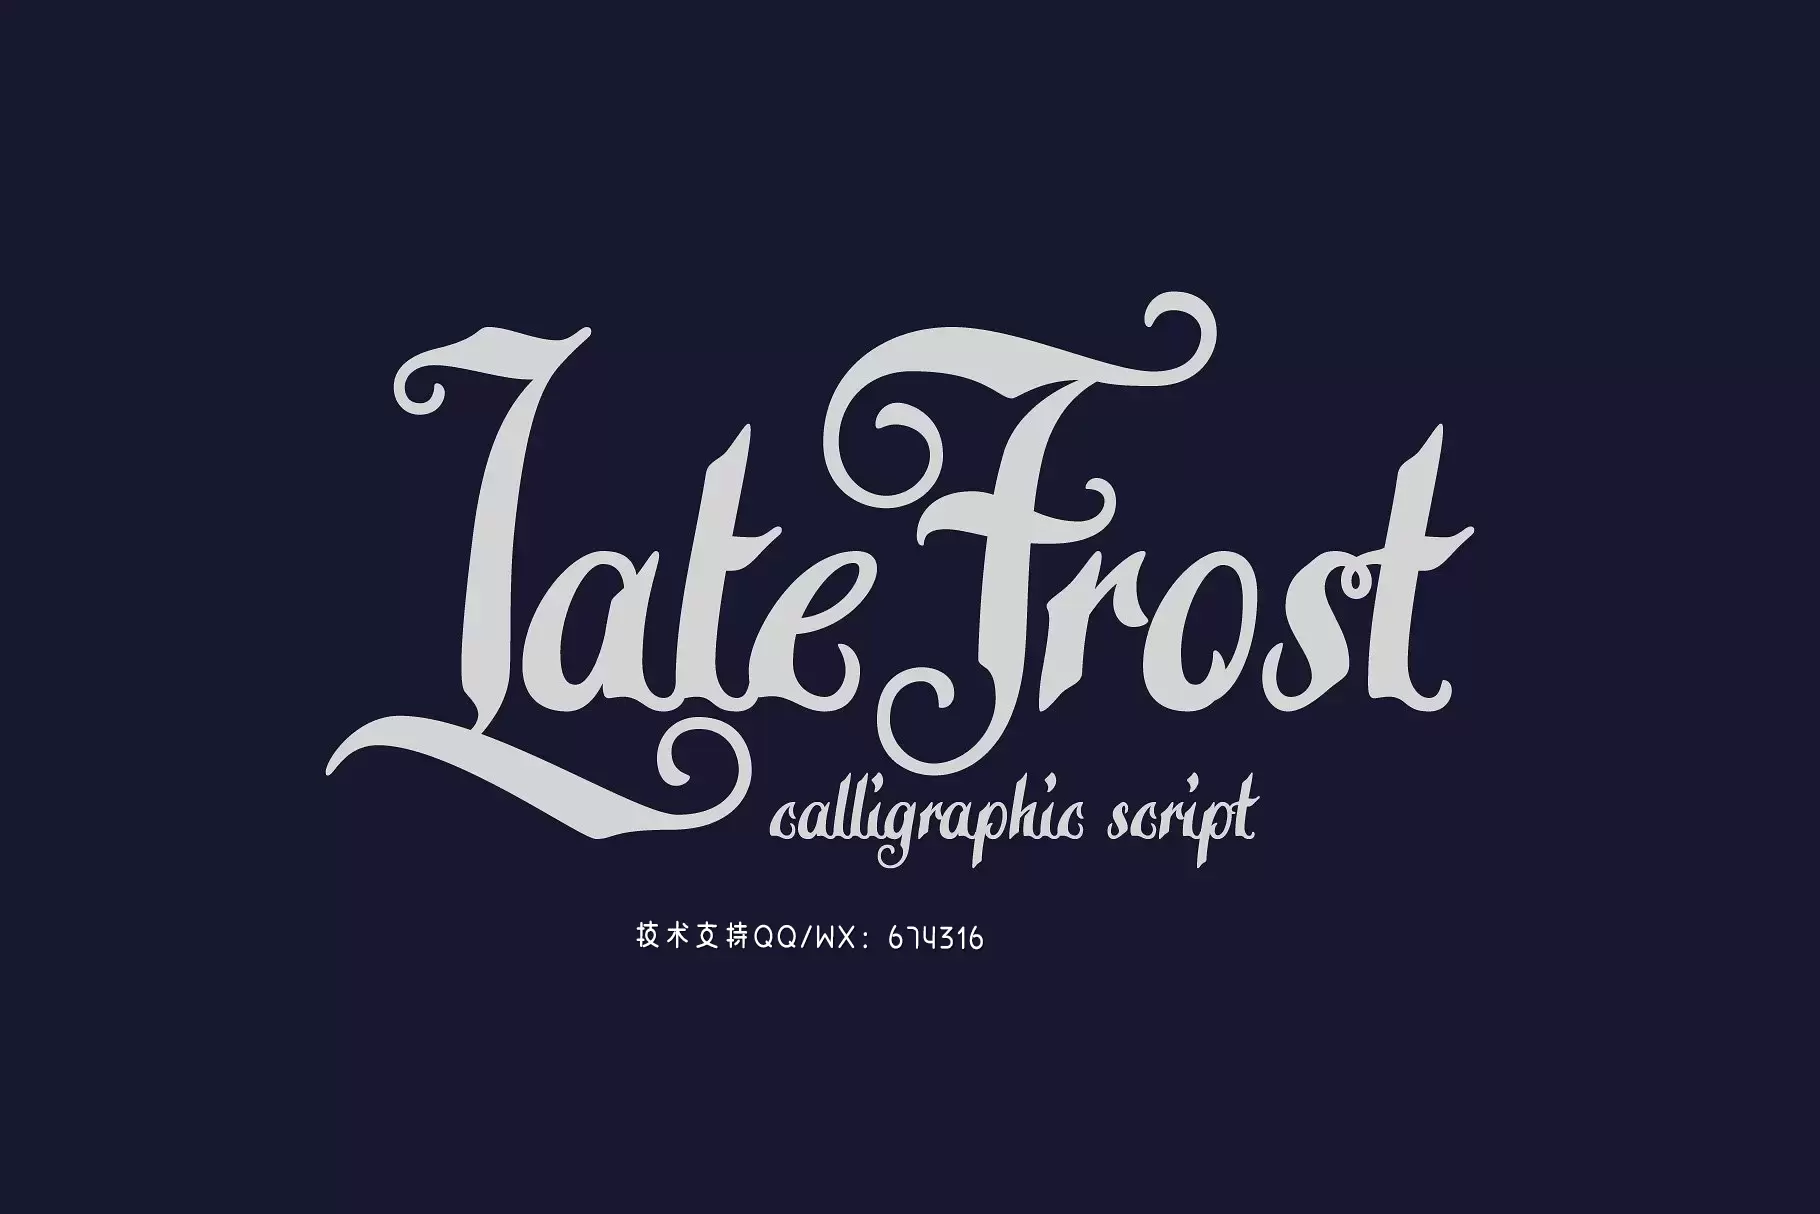 复古个性字体 Calligraphic script "Late Frost"免费下载